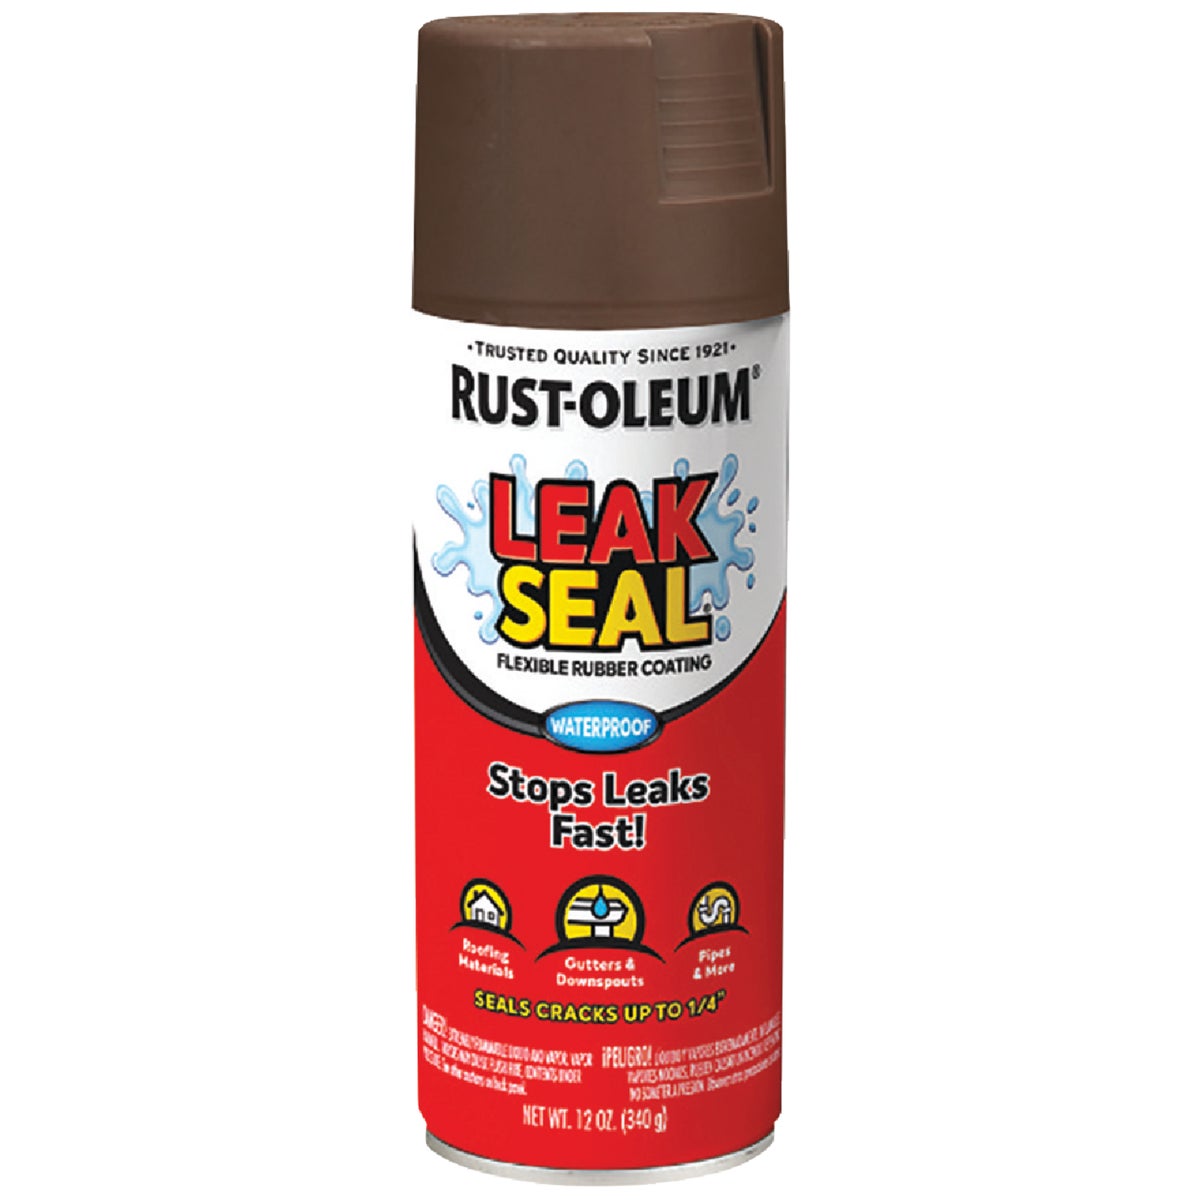 Rust-Oleum LeakSeal 12 Oz. Flexible Rubber Coating, Brown